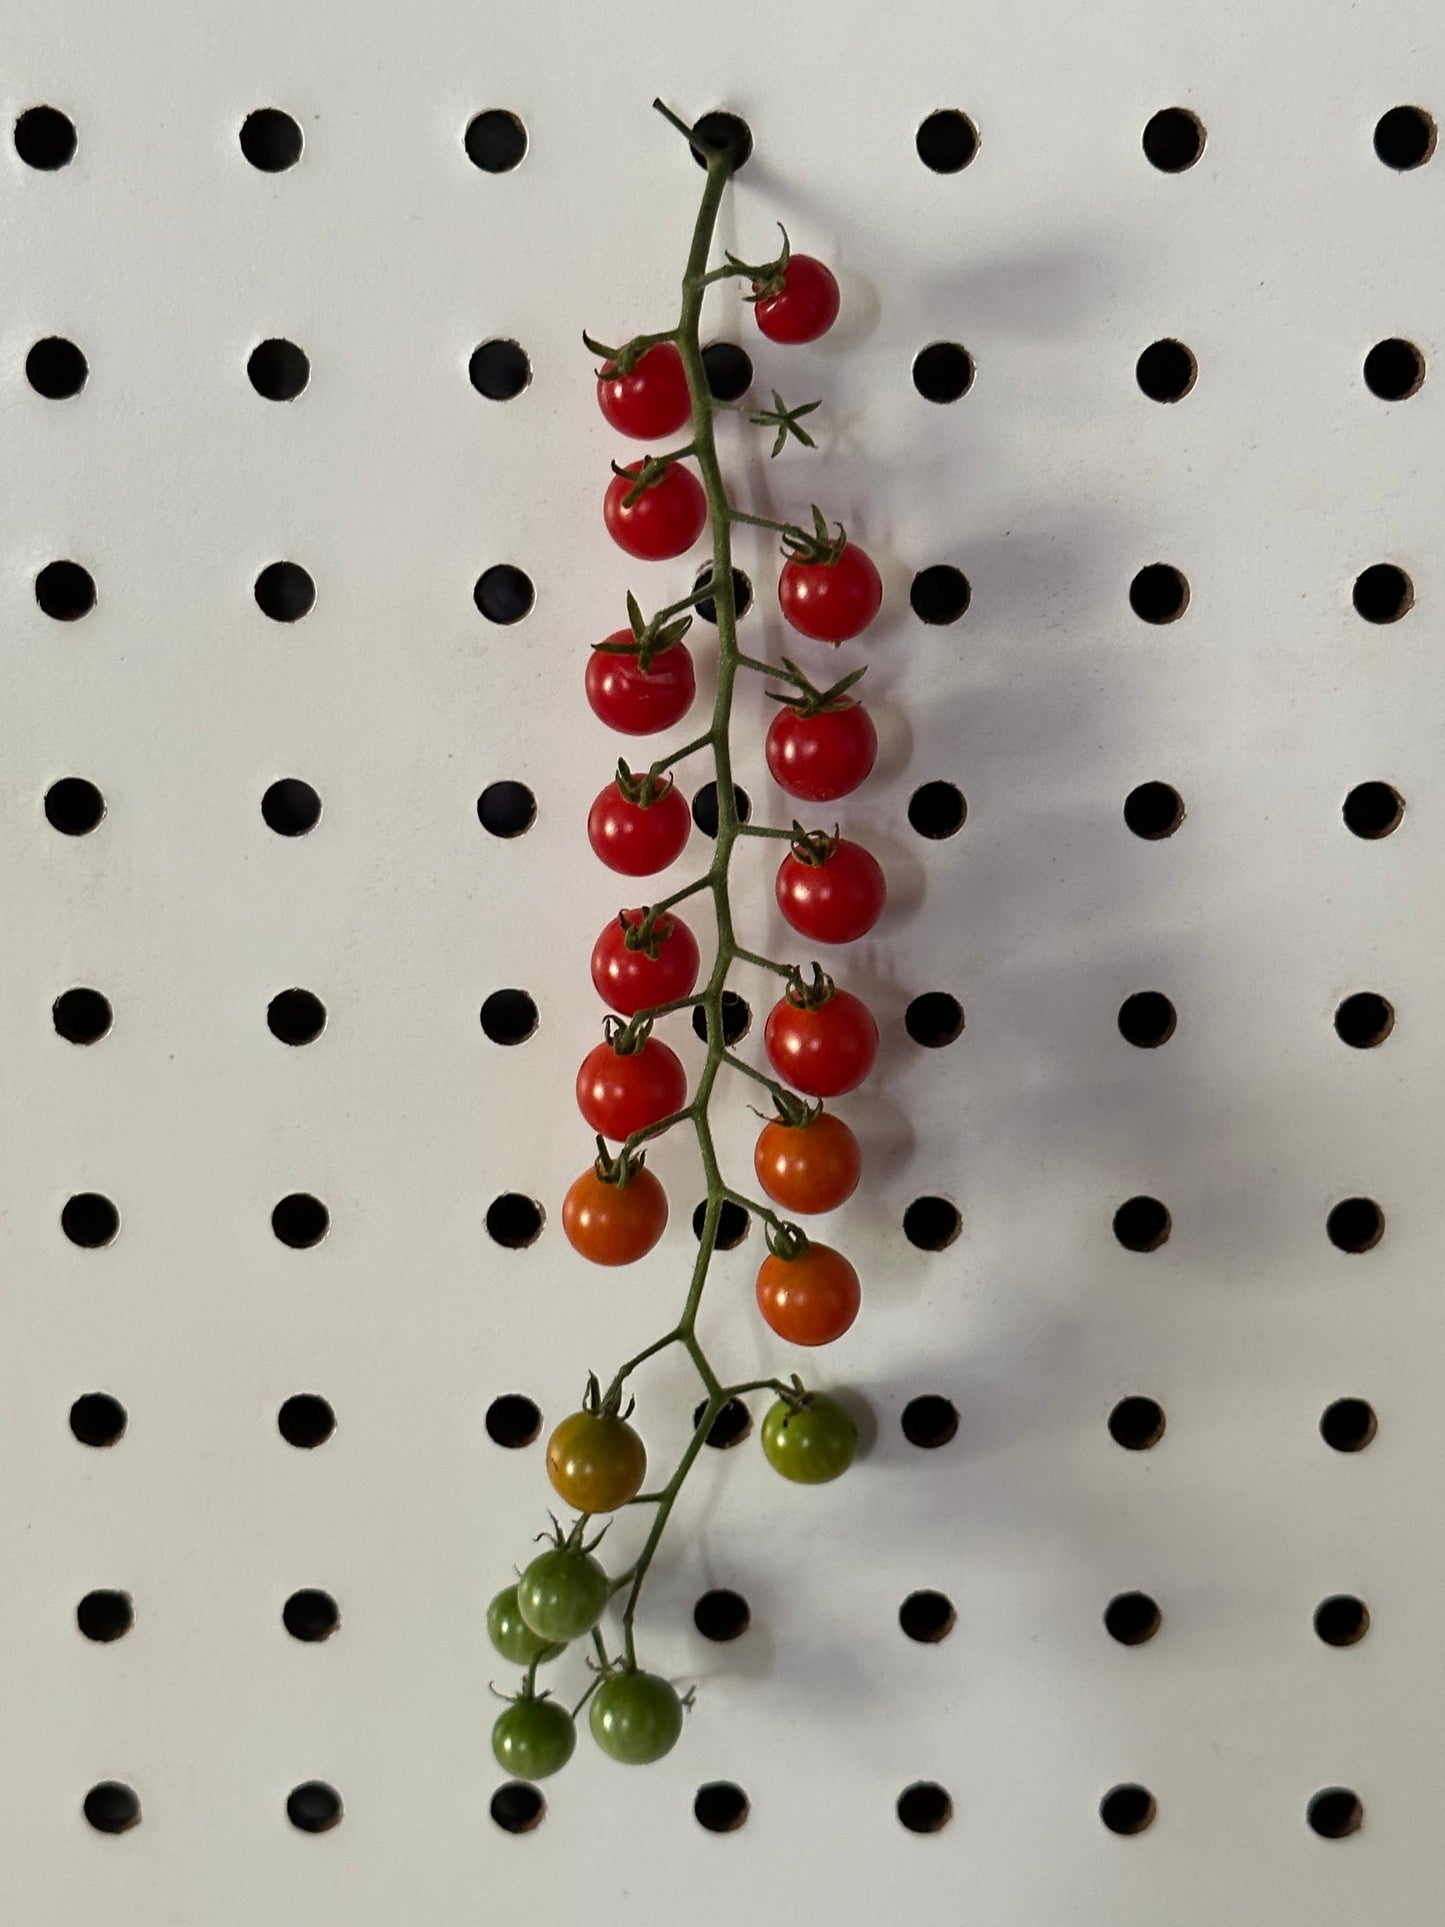 Sweet Pea Heirloom Tomato Seeds